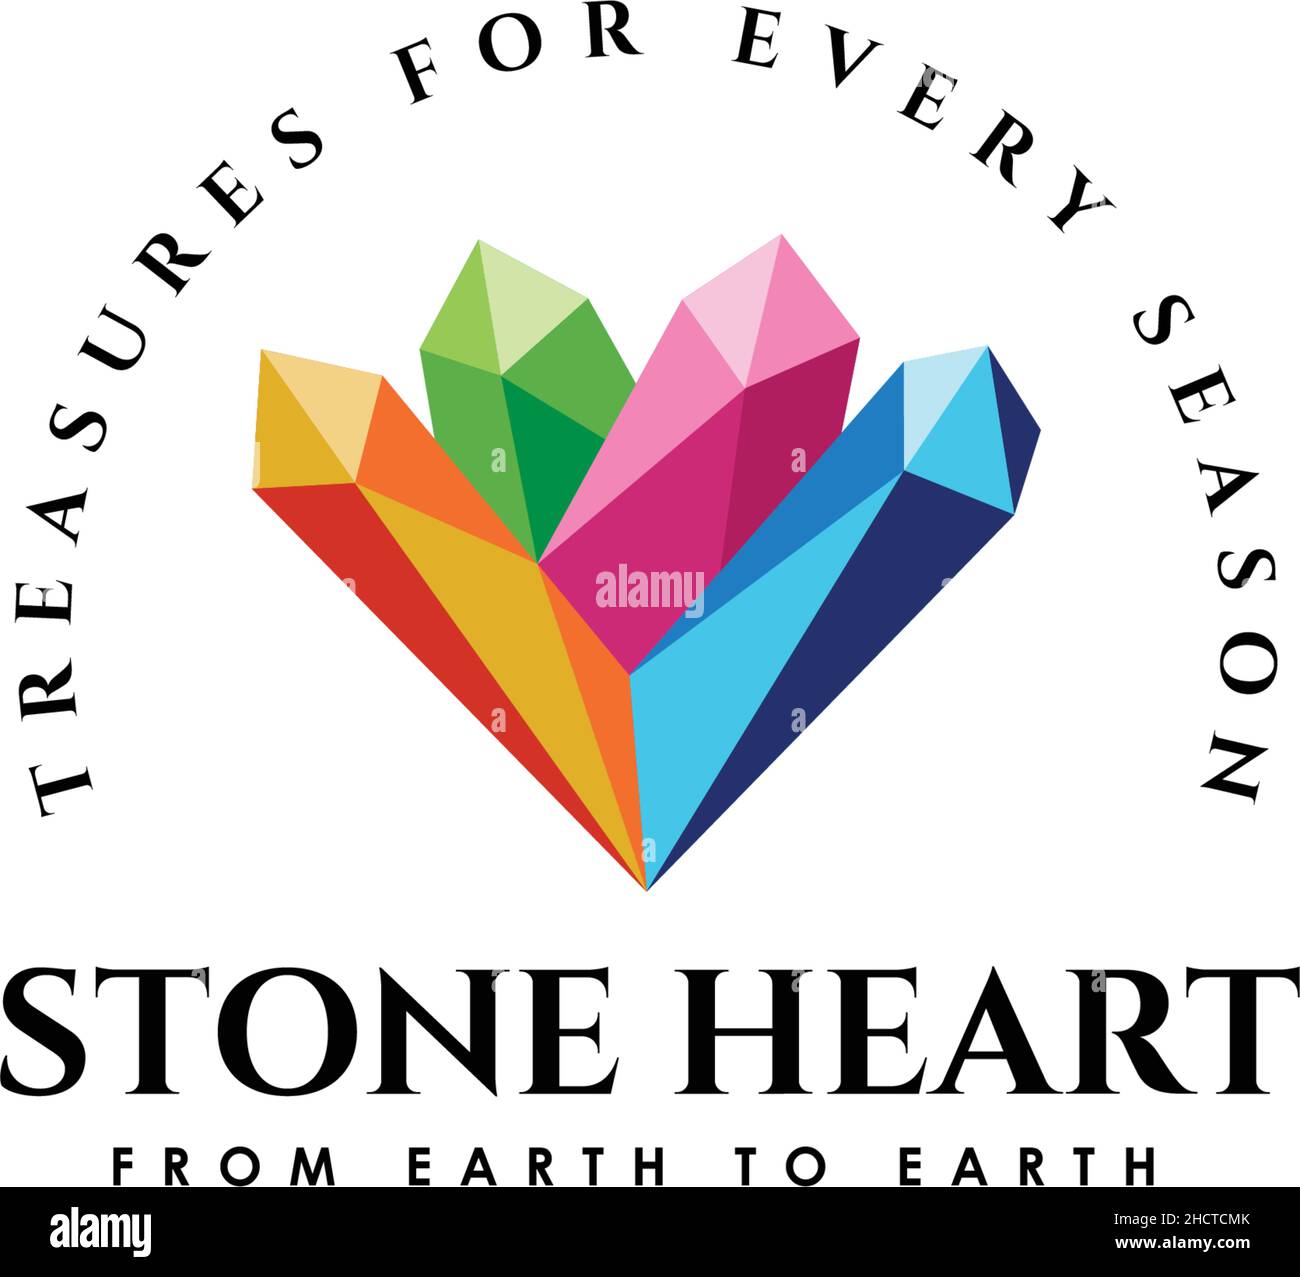 Heart gems stock image. Image of symbol, reflection, romance - 3987351